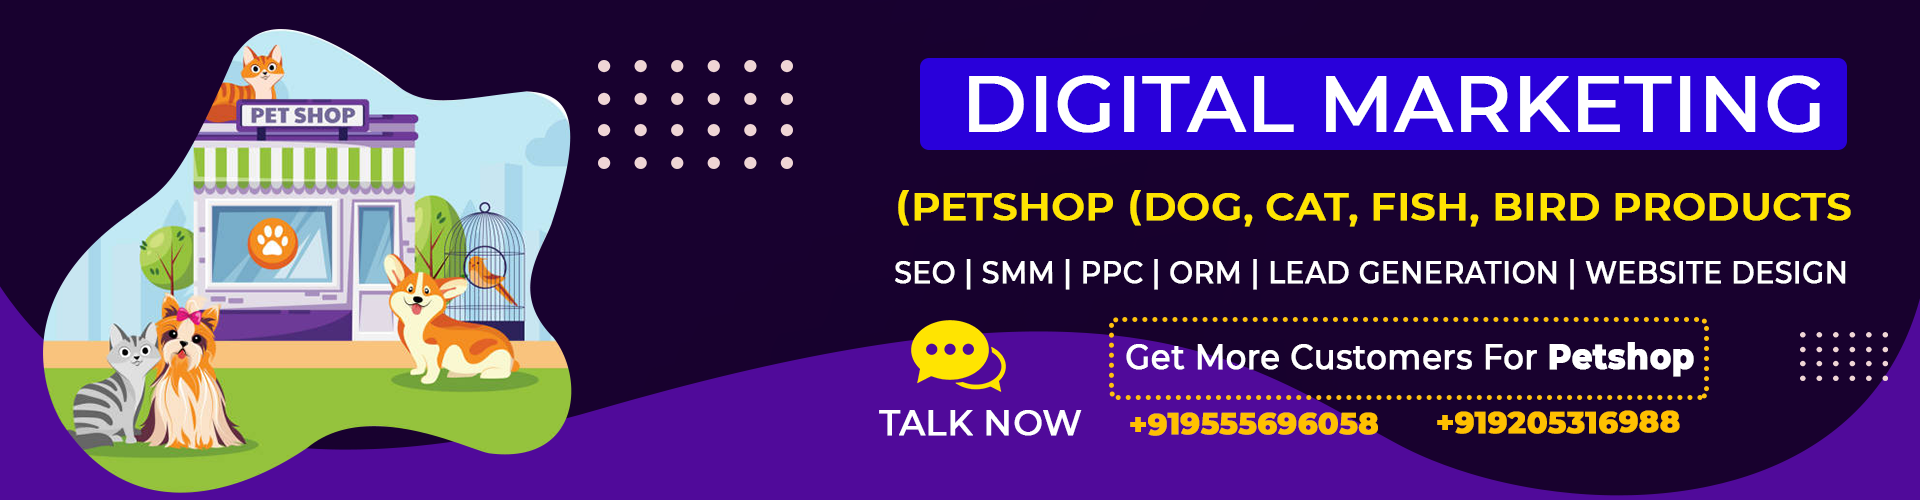 digital marketing for pet shop